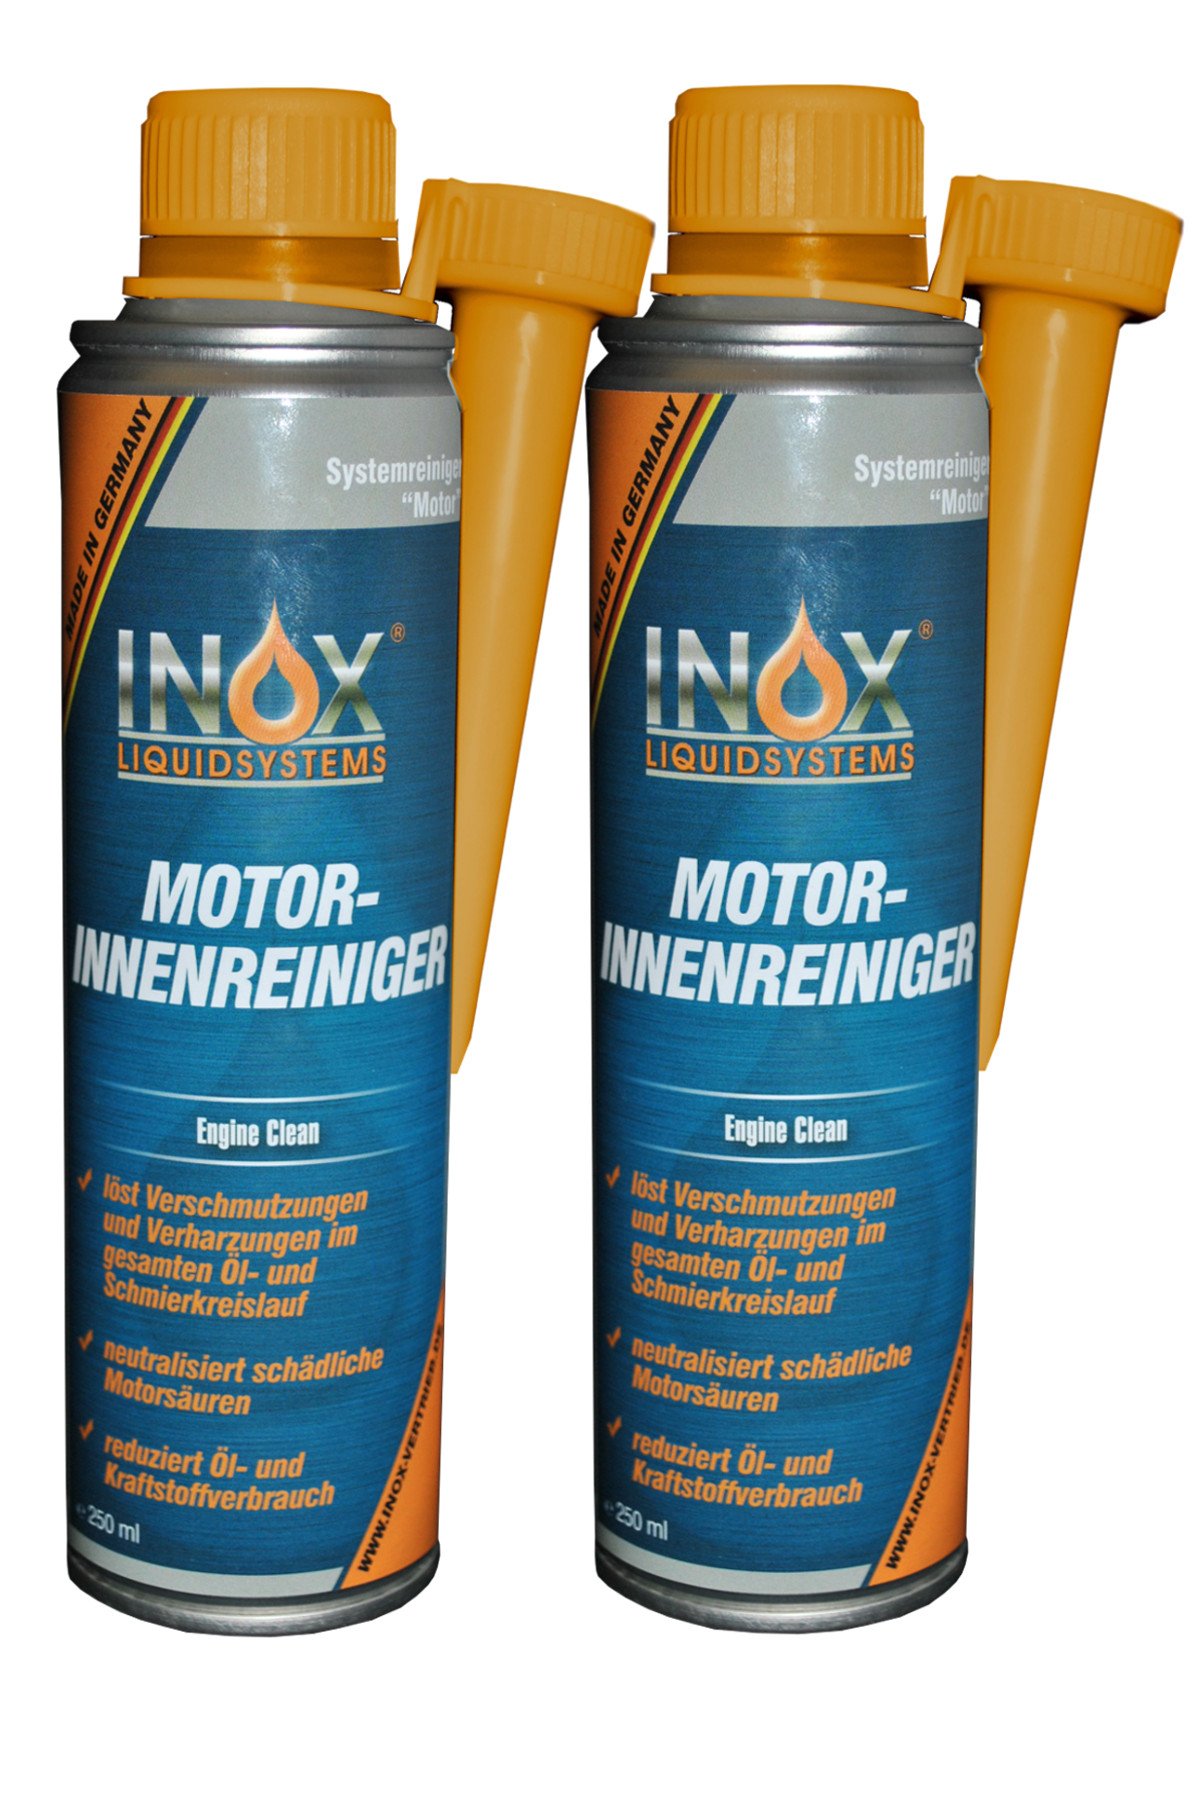 INOX® Motorinnenreiniger Additiv, 2 x 250ml - Reiniger für KFZ Motorsysteme von INOX-LIQUIDSYSTEMS